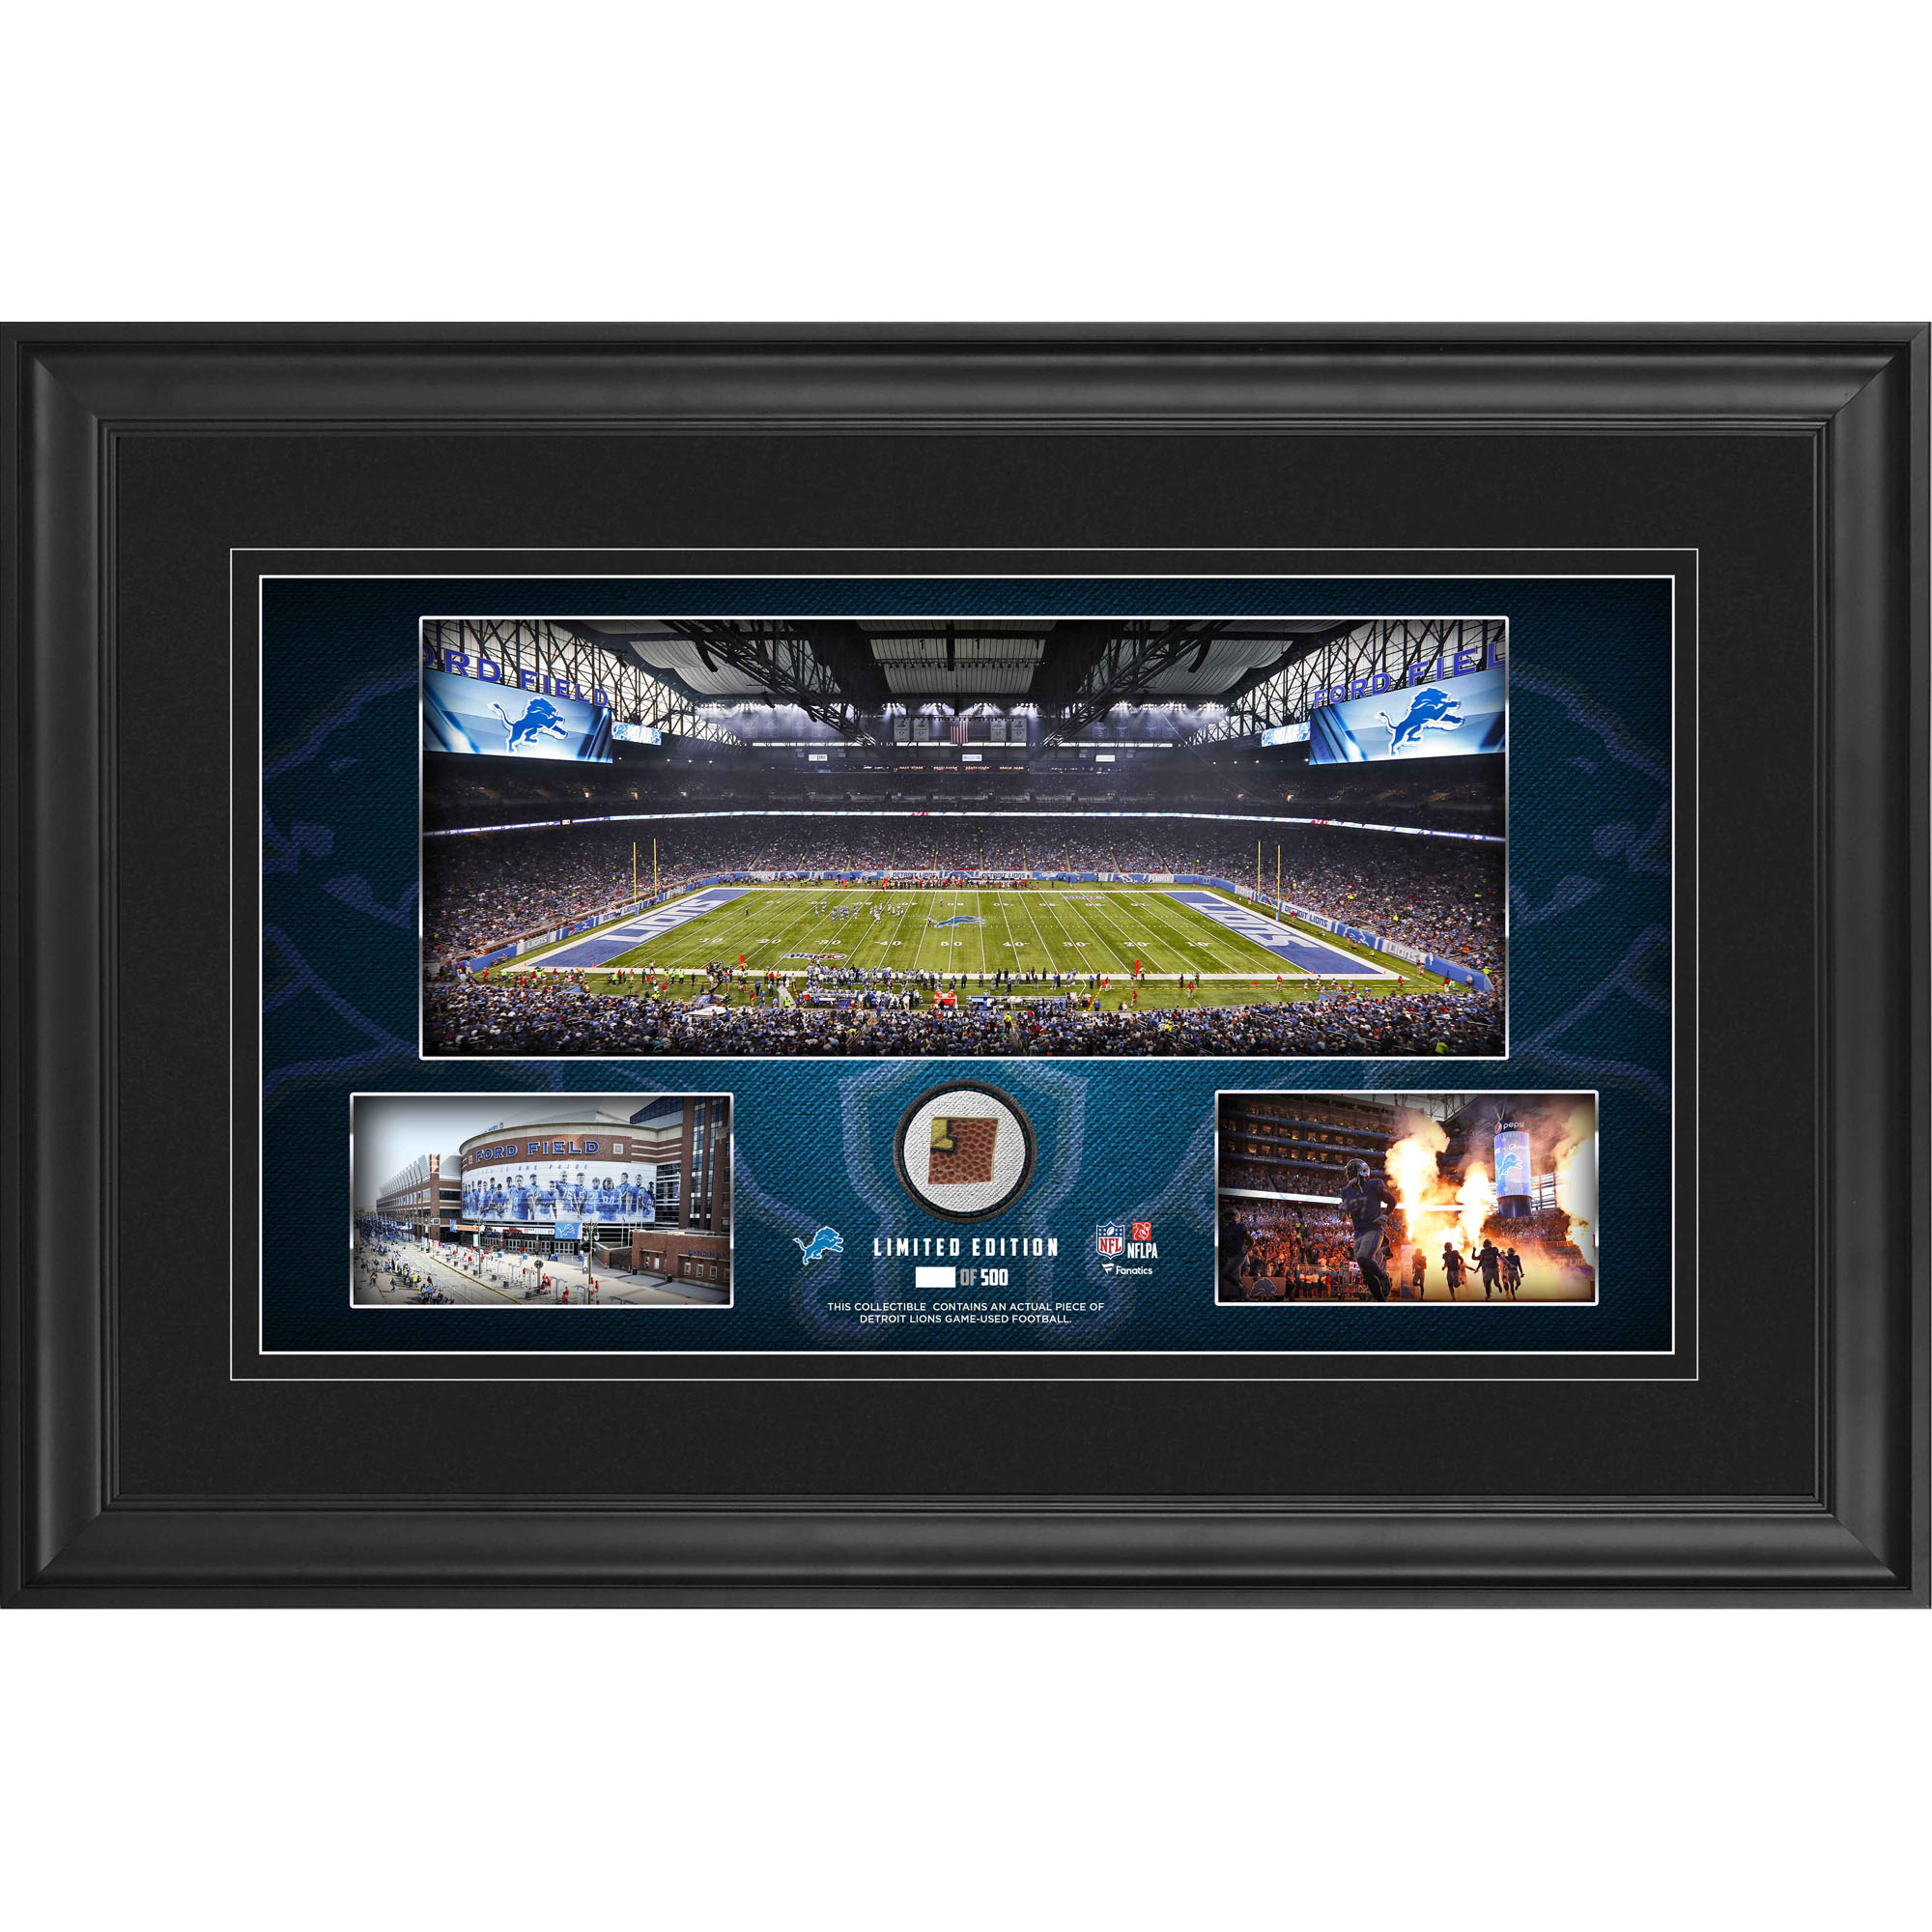 Detroit Lions – gerahmte Stadion-Panoramacollage, 10 x 18 Zoll, mit beim Spiel verwendetem Football – limitierte Auflage von 500 Stück